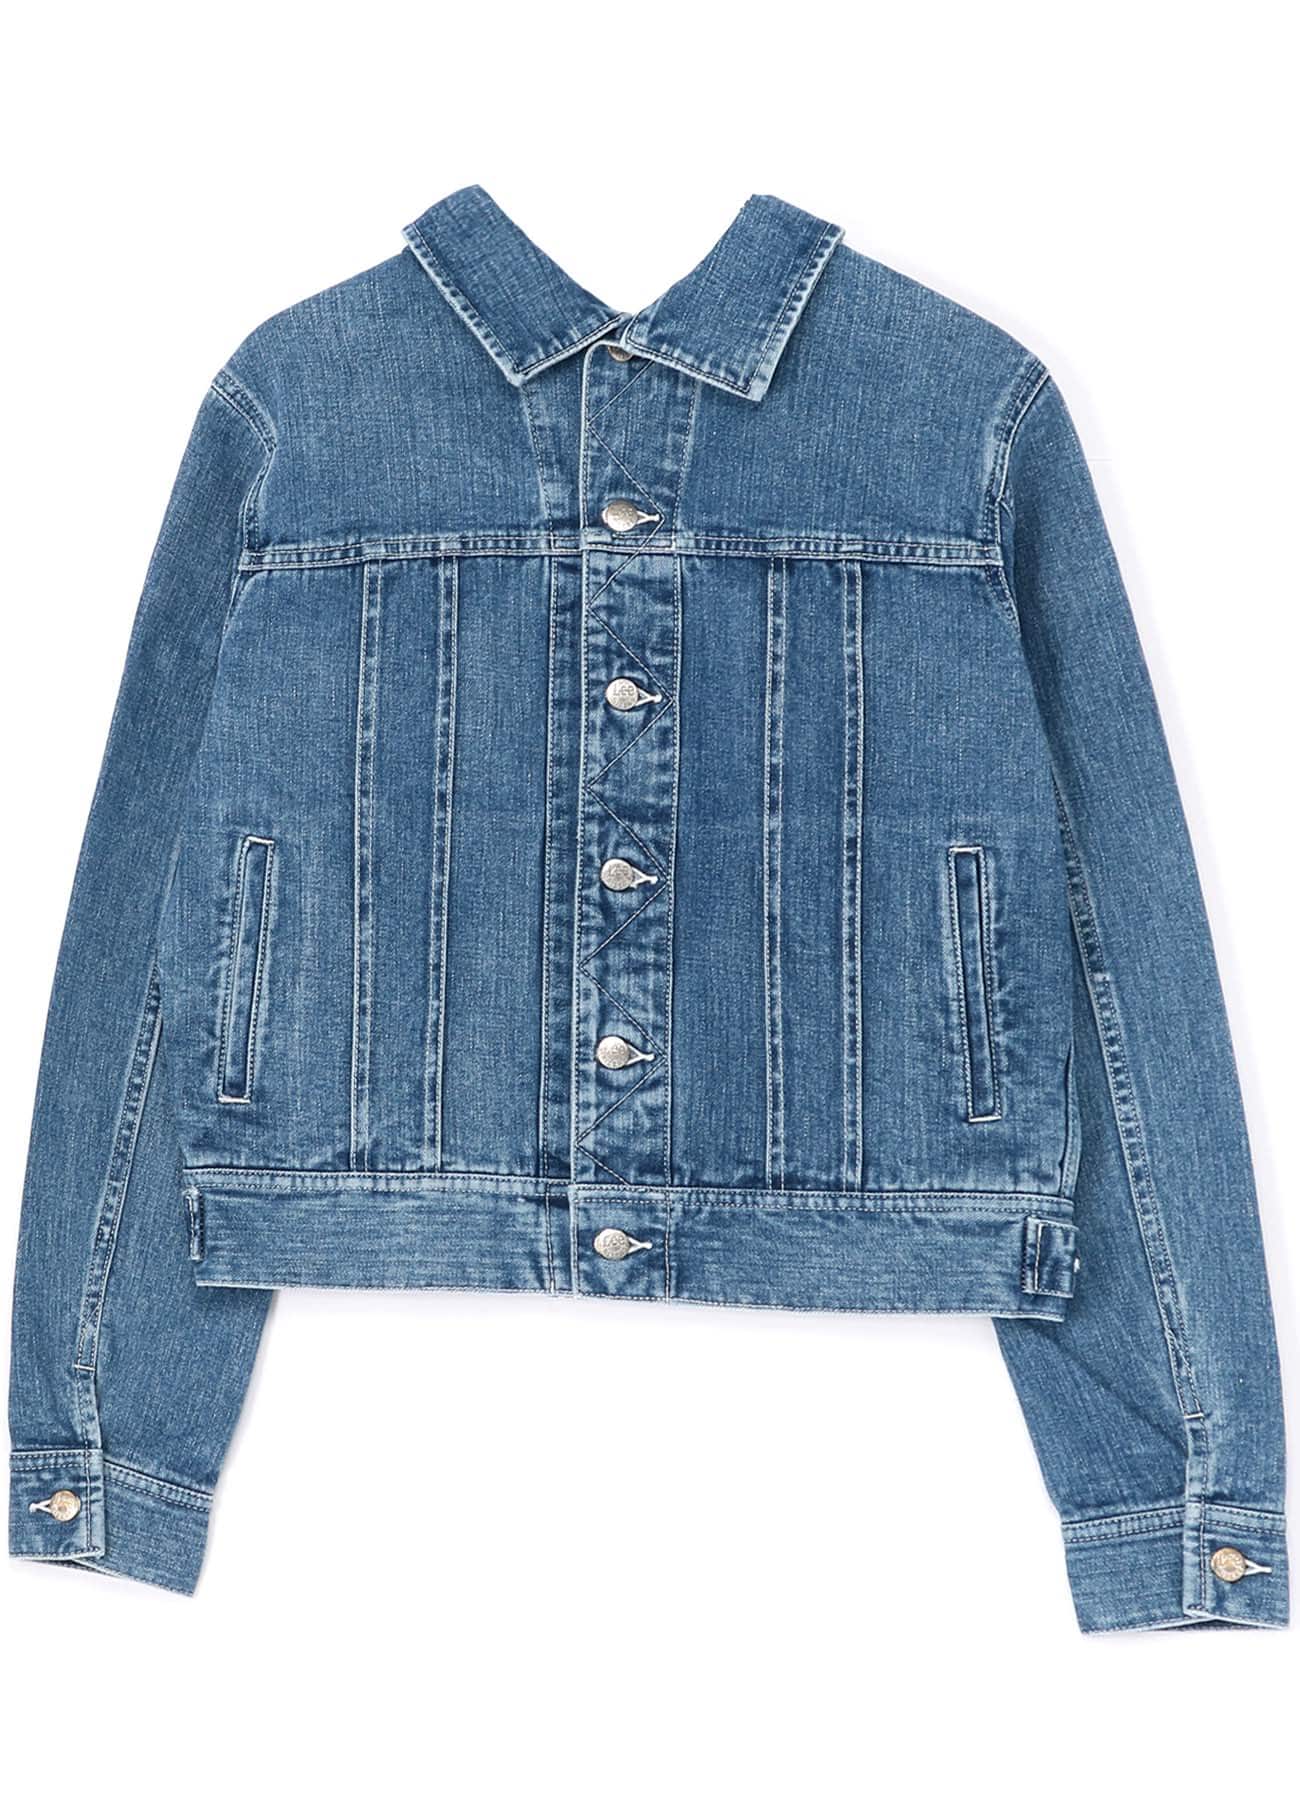 LIMI feu ×Lee Reversible Jacket(S Blue): Vintage 1.1｜THE SHOP